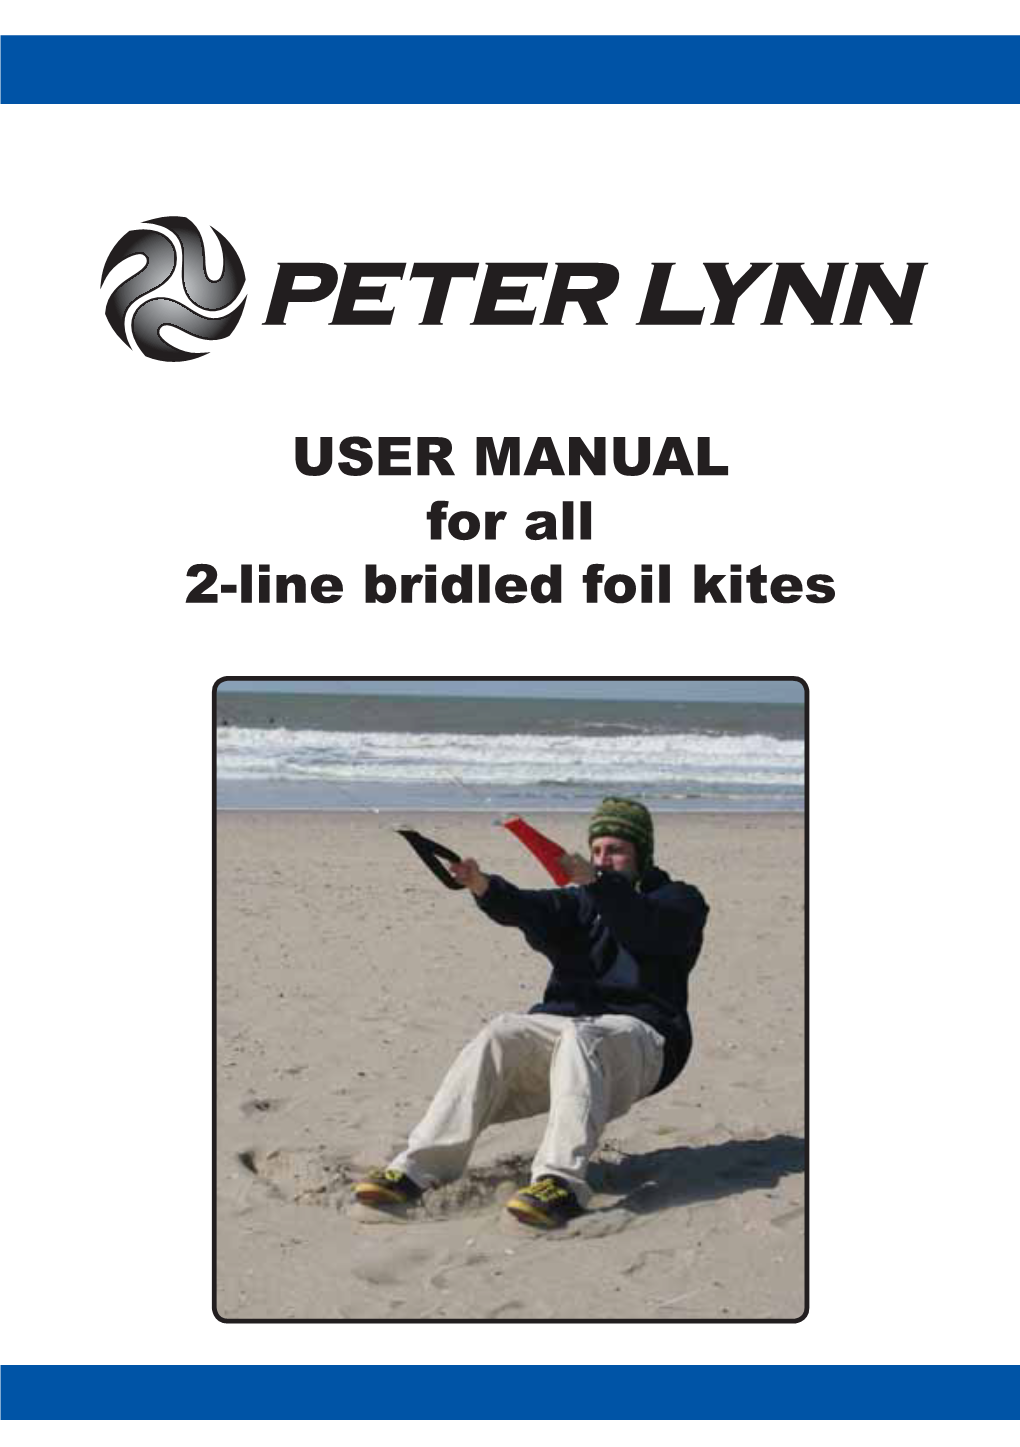 USER MANUAL for All 2-Line Bridled Foil Kites